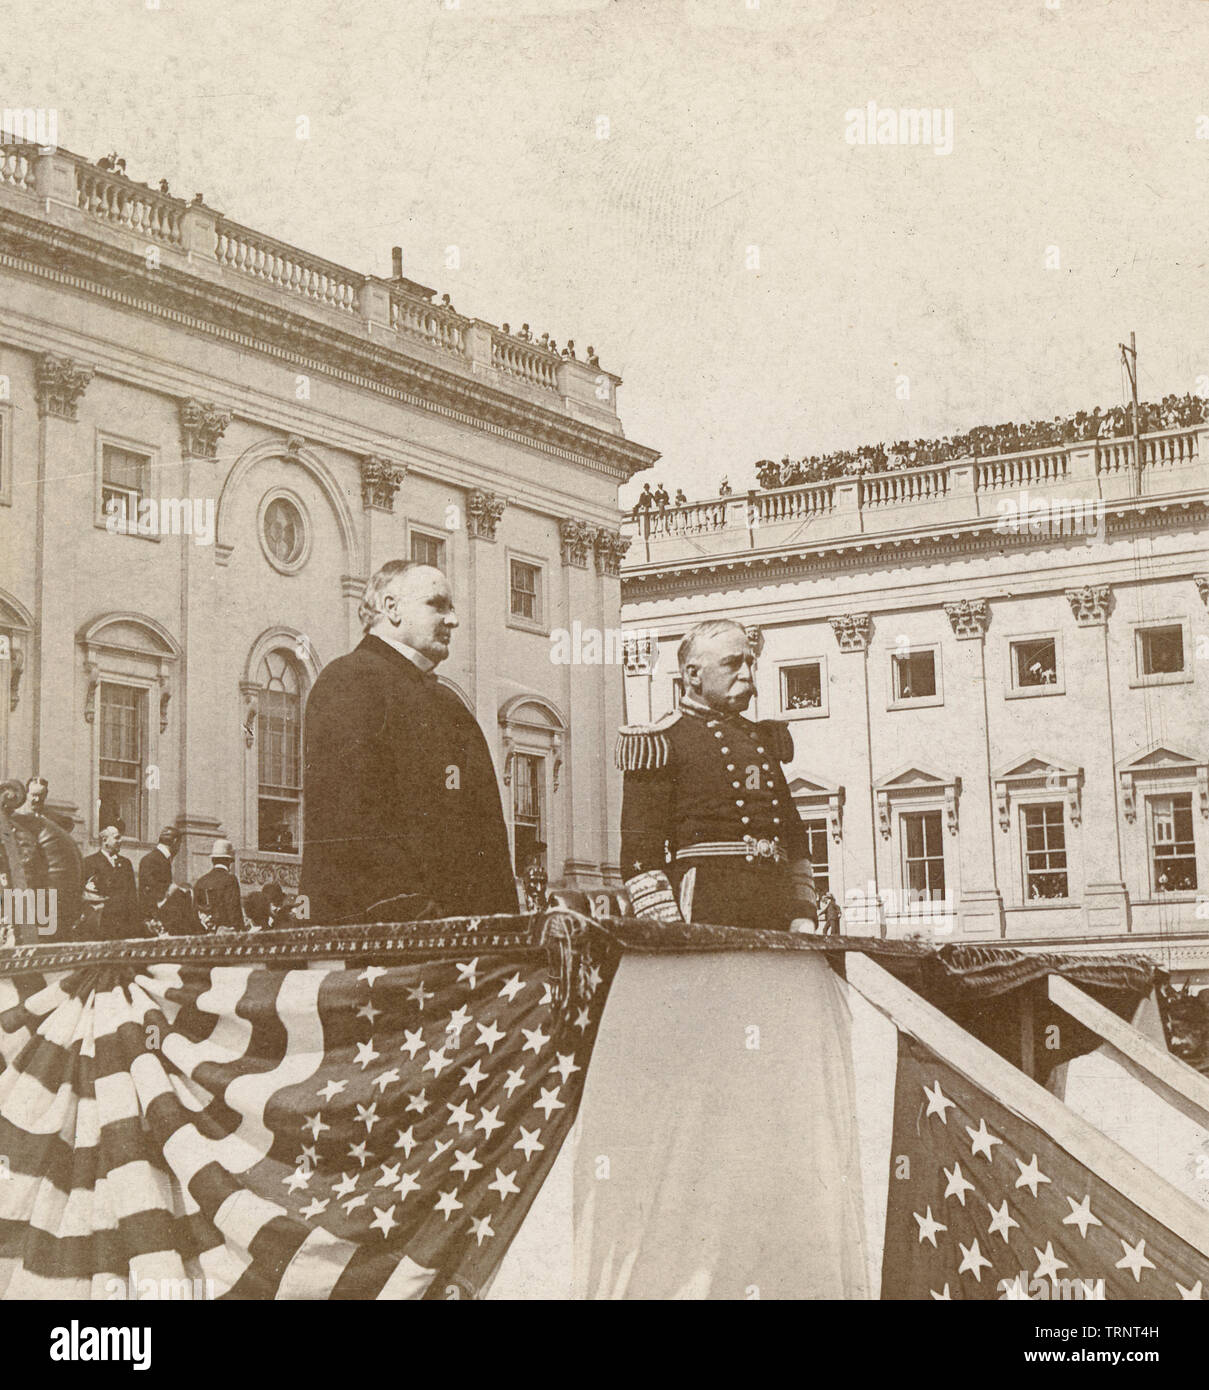 Antike Oktober 3, 1899 Foto, Präsident McKinley und Admiral Dewey die Truppen bei der Präsentation des Schwert in Washington, DC. Original Foto von B.l. Singley. Quelle: ORIGINAL STEREOVIEW KARTE. Stockfoto